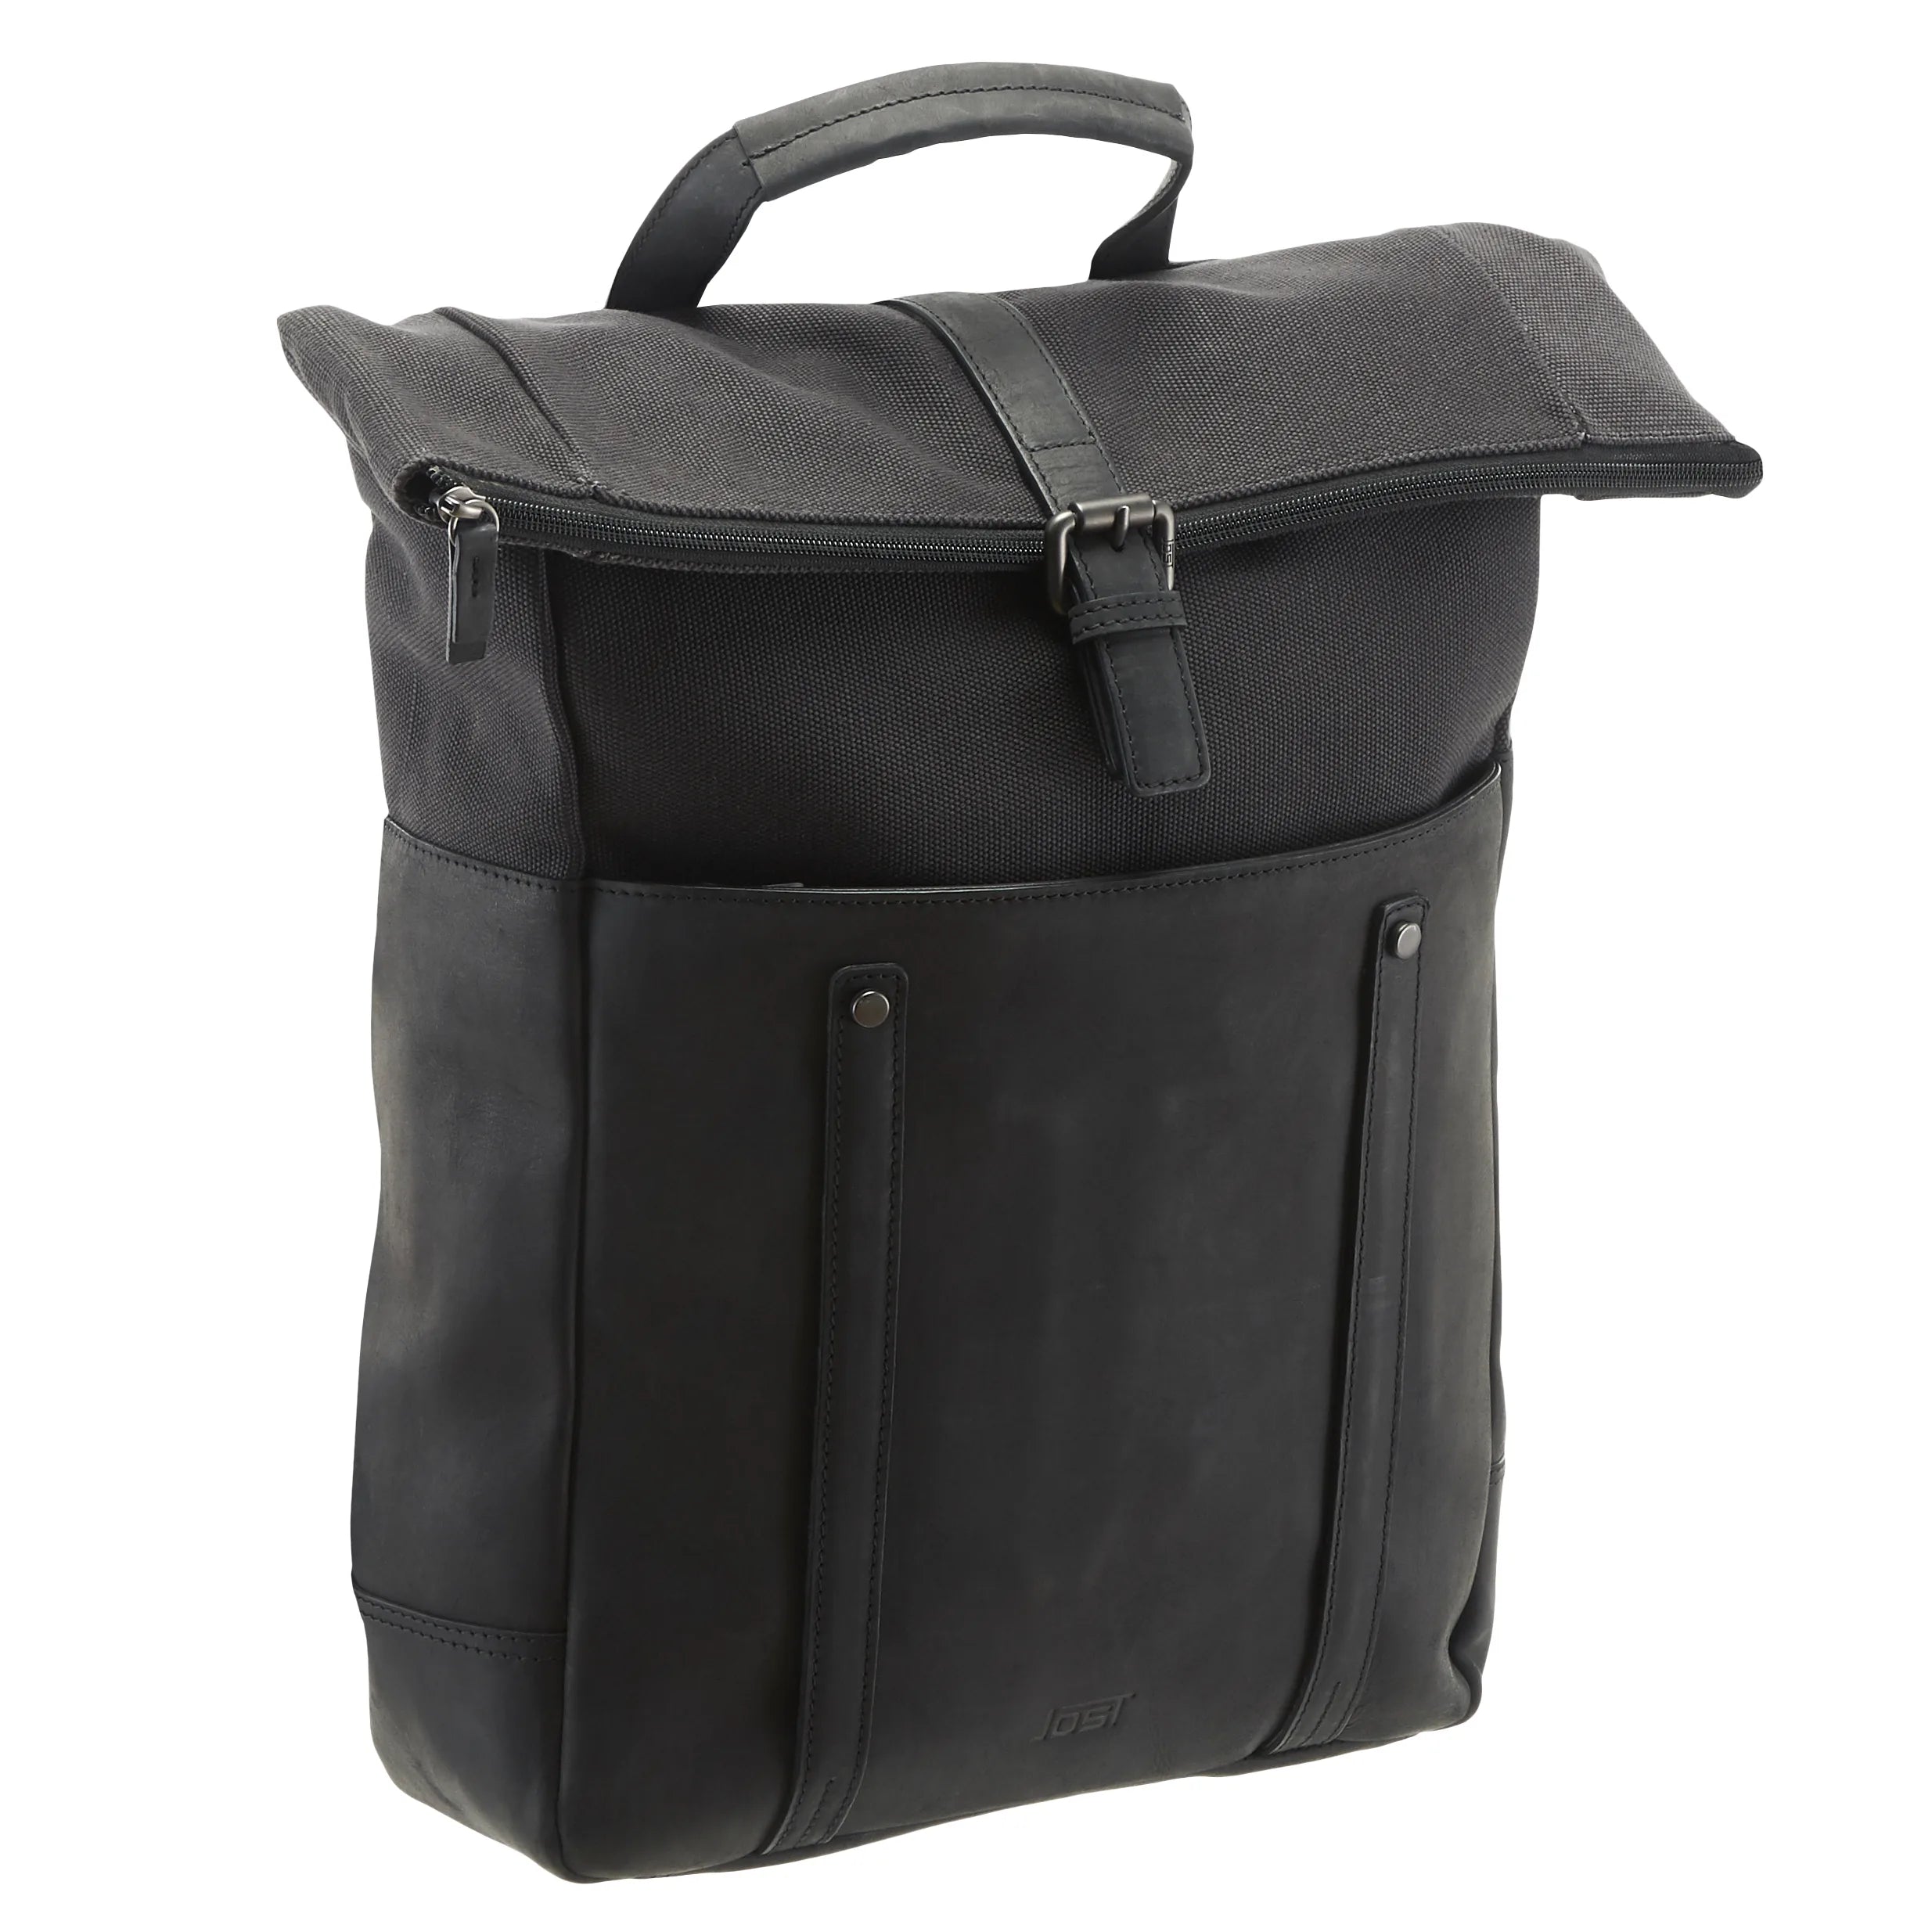 Jost Salo courier backpack 42 cm - black